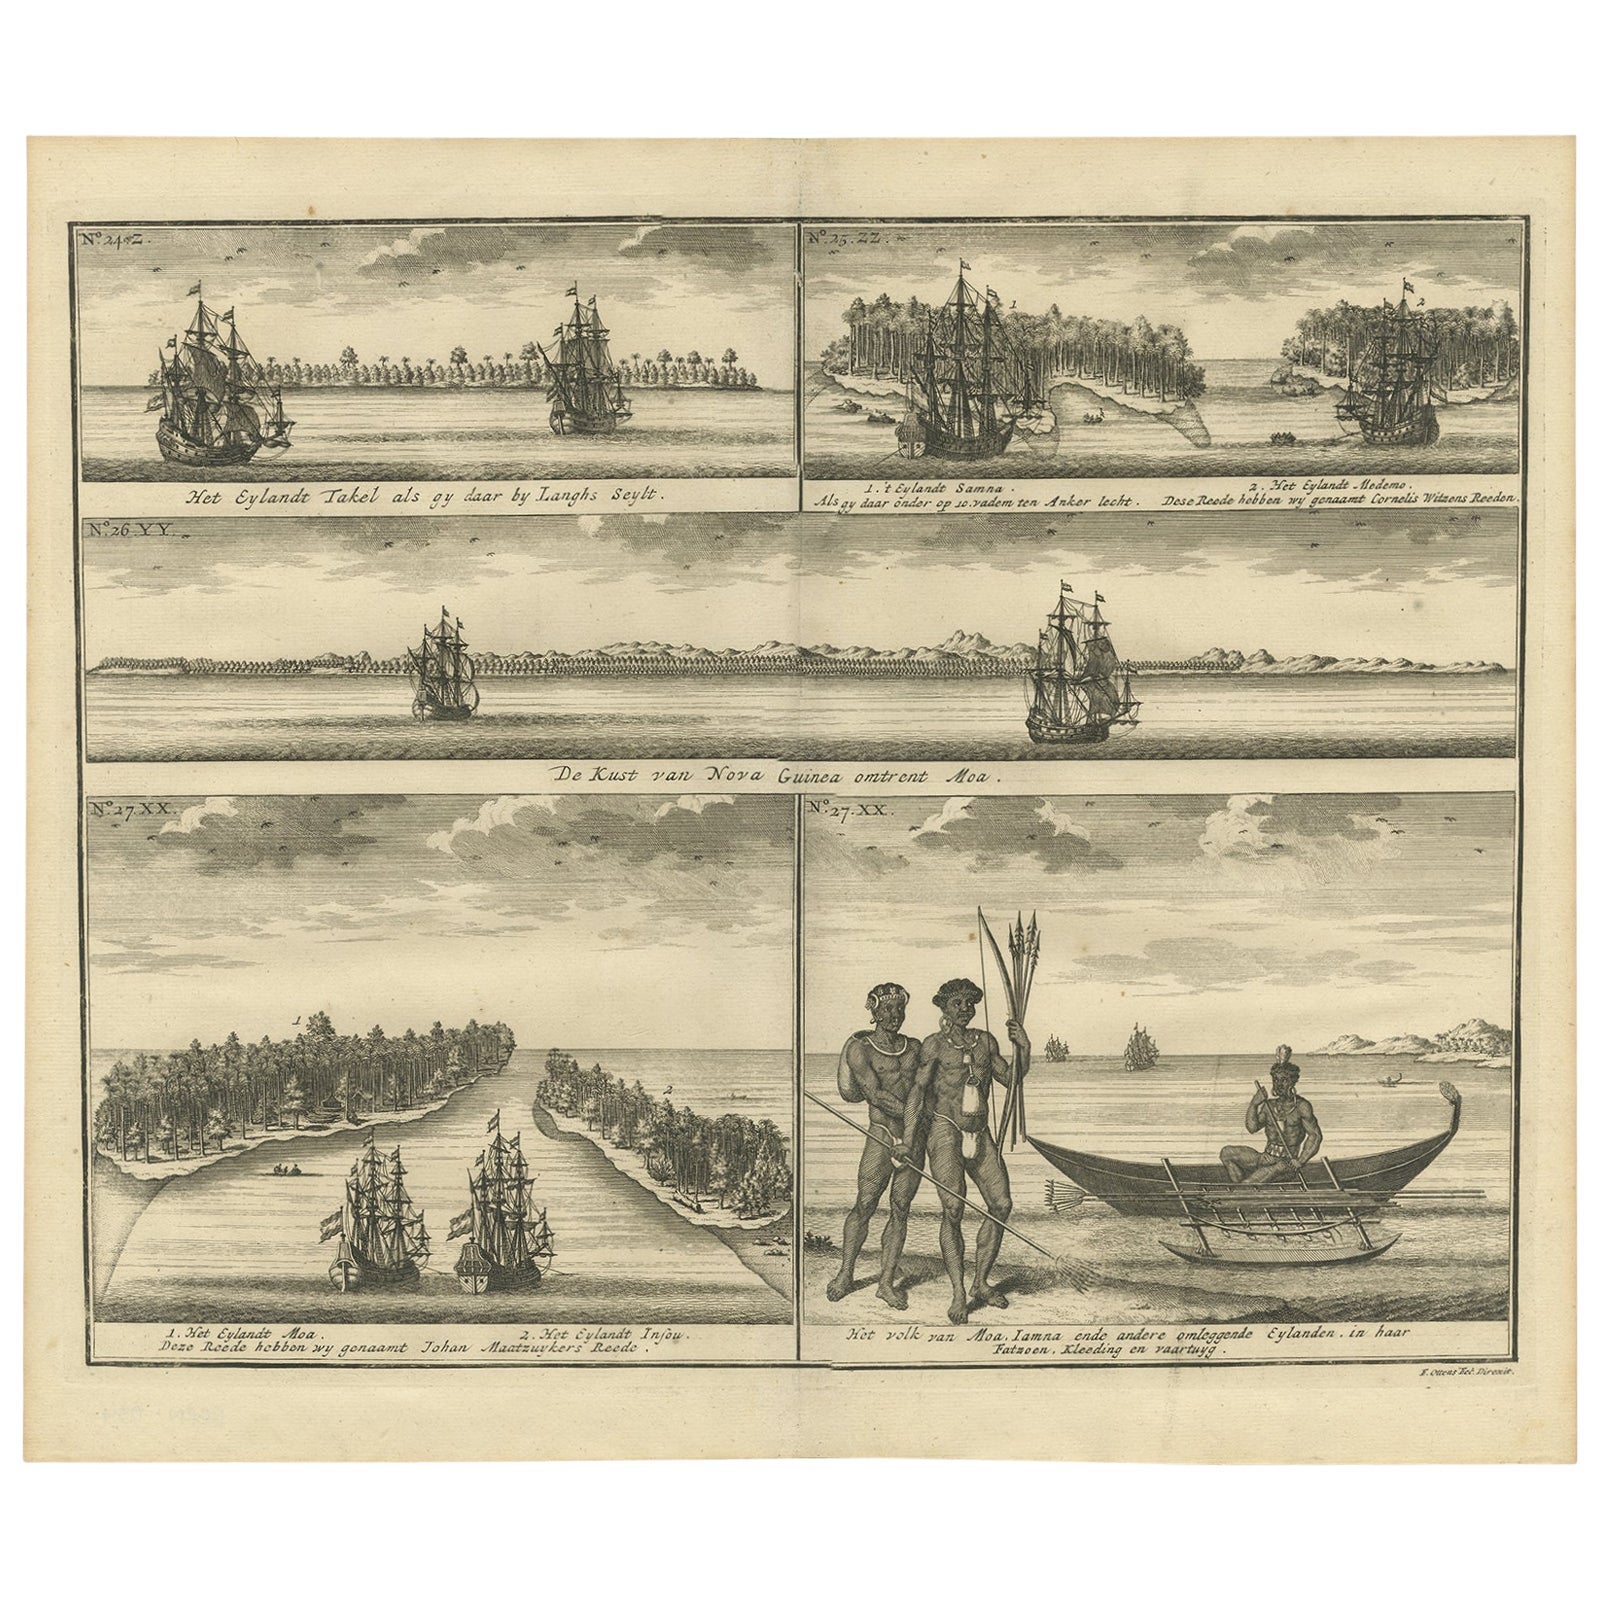 Voitures VOC, peuples amérindiens et vues côtières d'îles près de Papouasie-Nouvelle-Guinée, 1726